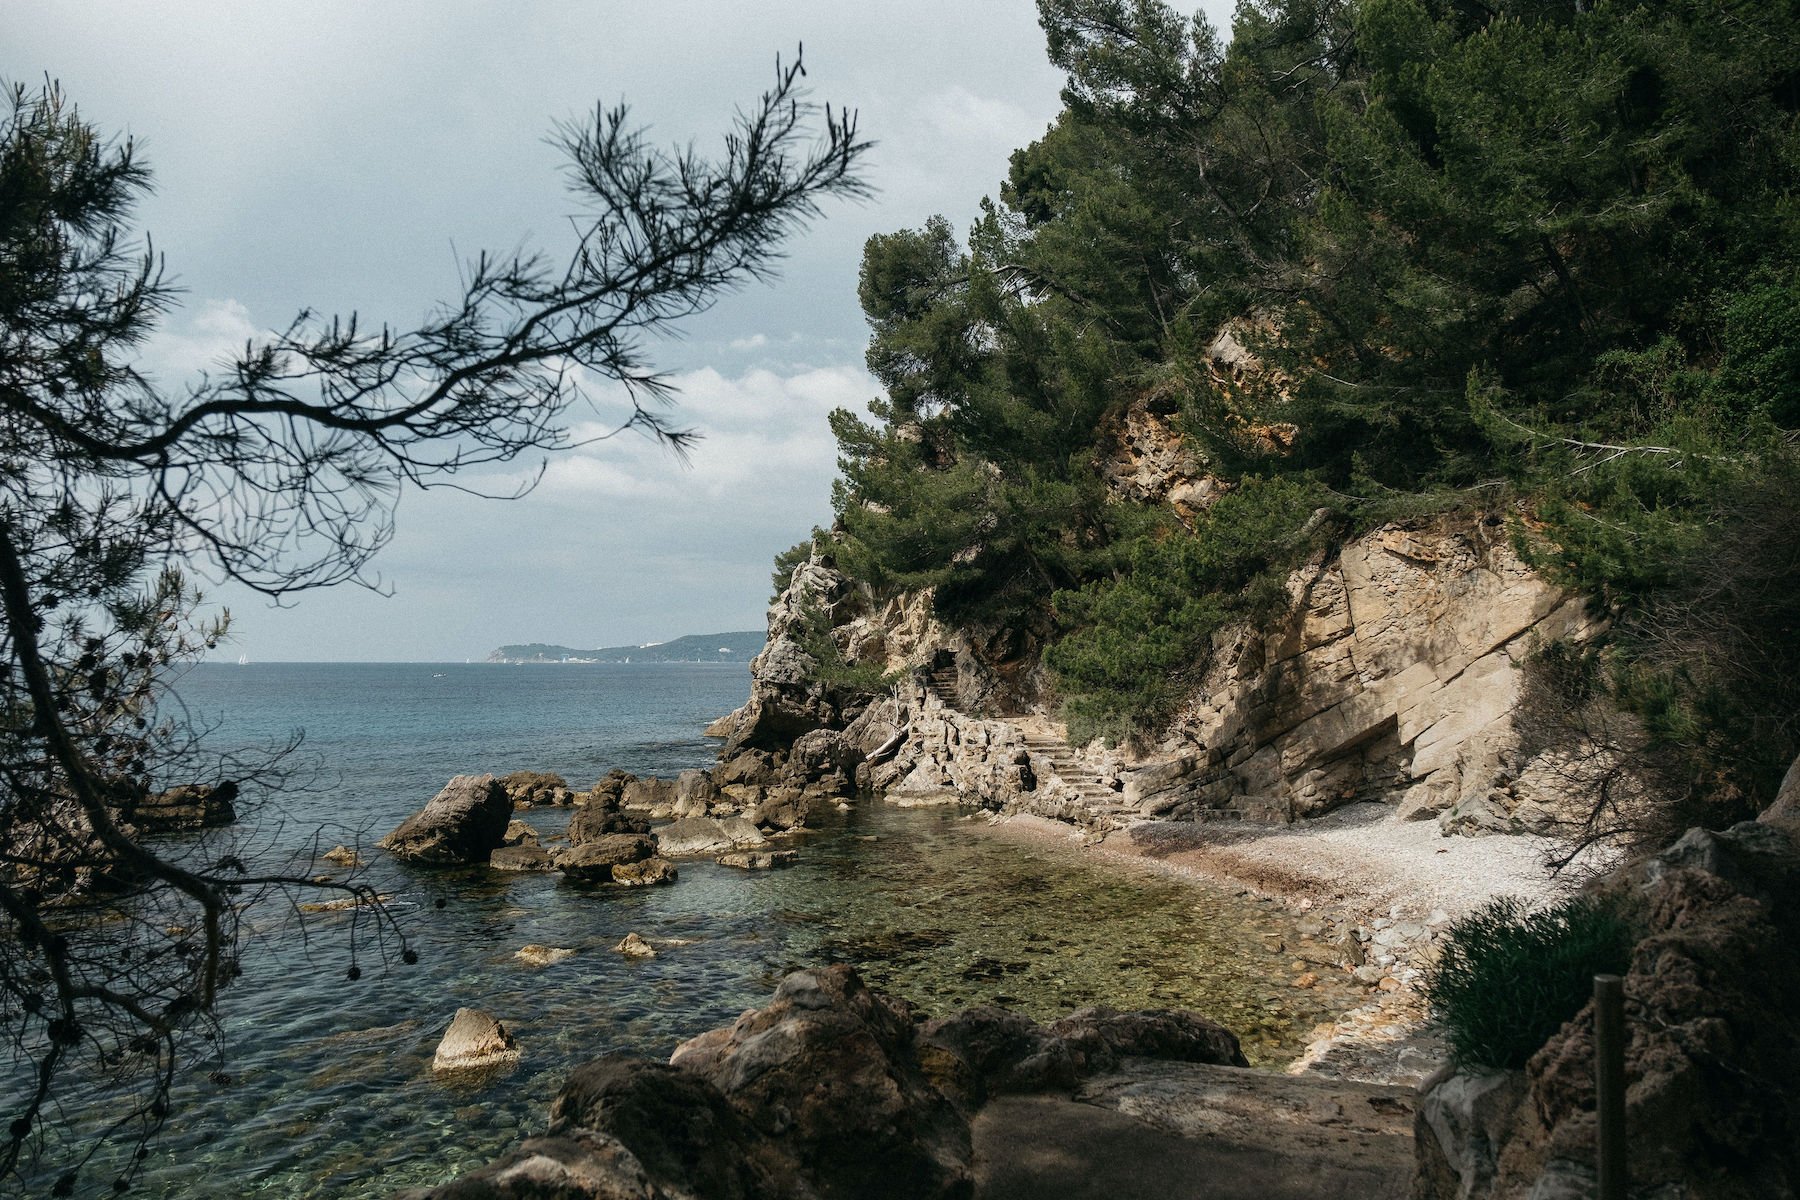 Luxury estate on Côte d'Azur overlooking the Mediterranean